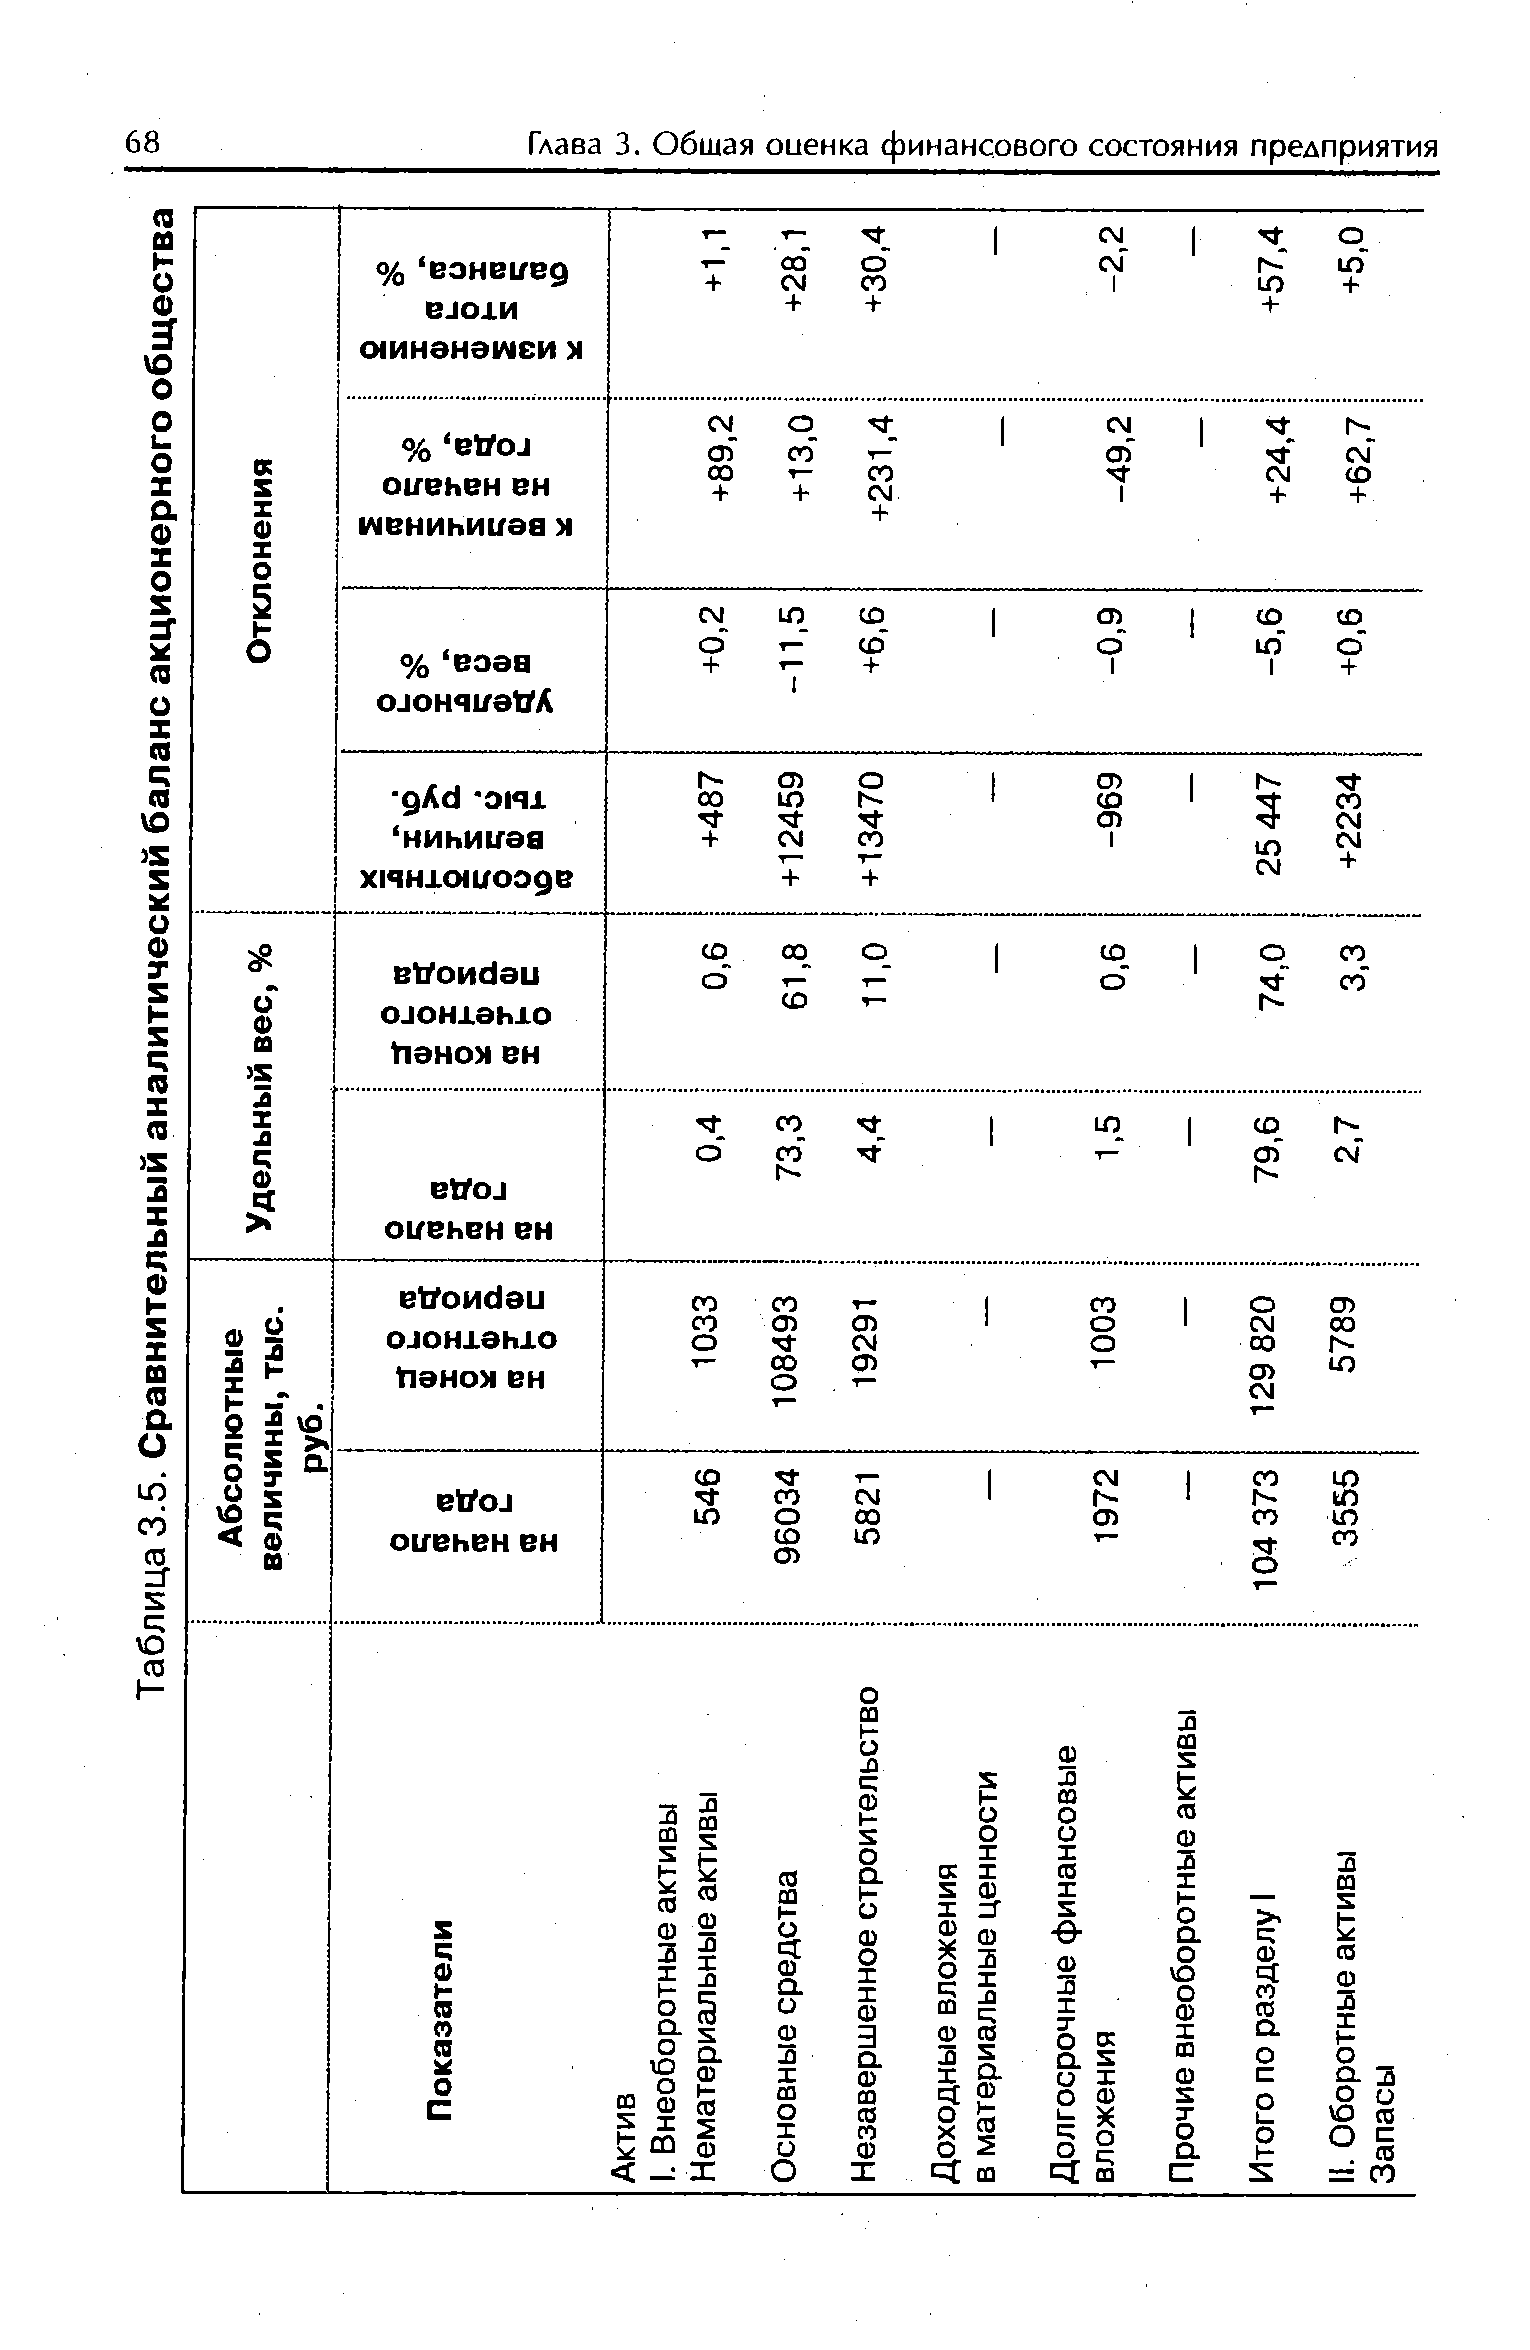 Таблица 3.5. Сравнительный аналитический баланс акционерного общества 
